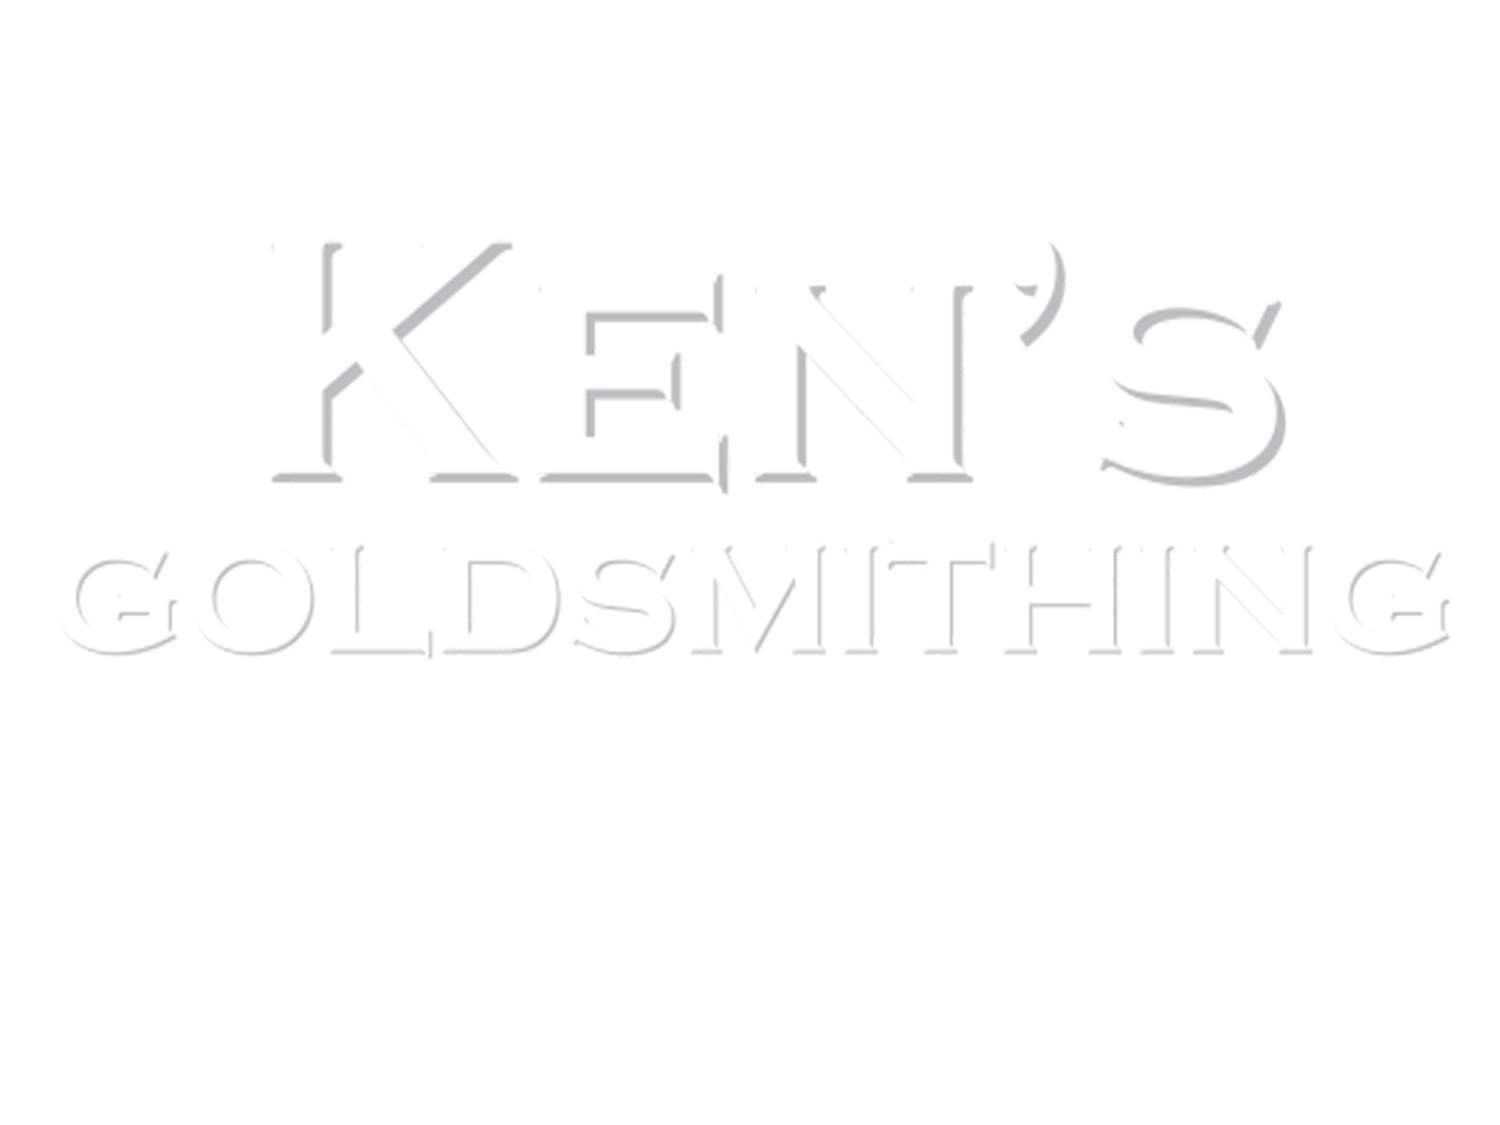 Ken's Goldsmithing